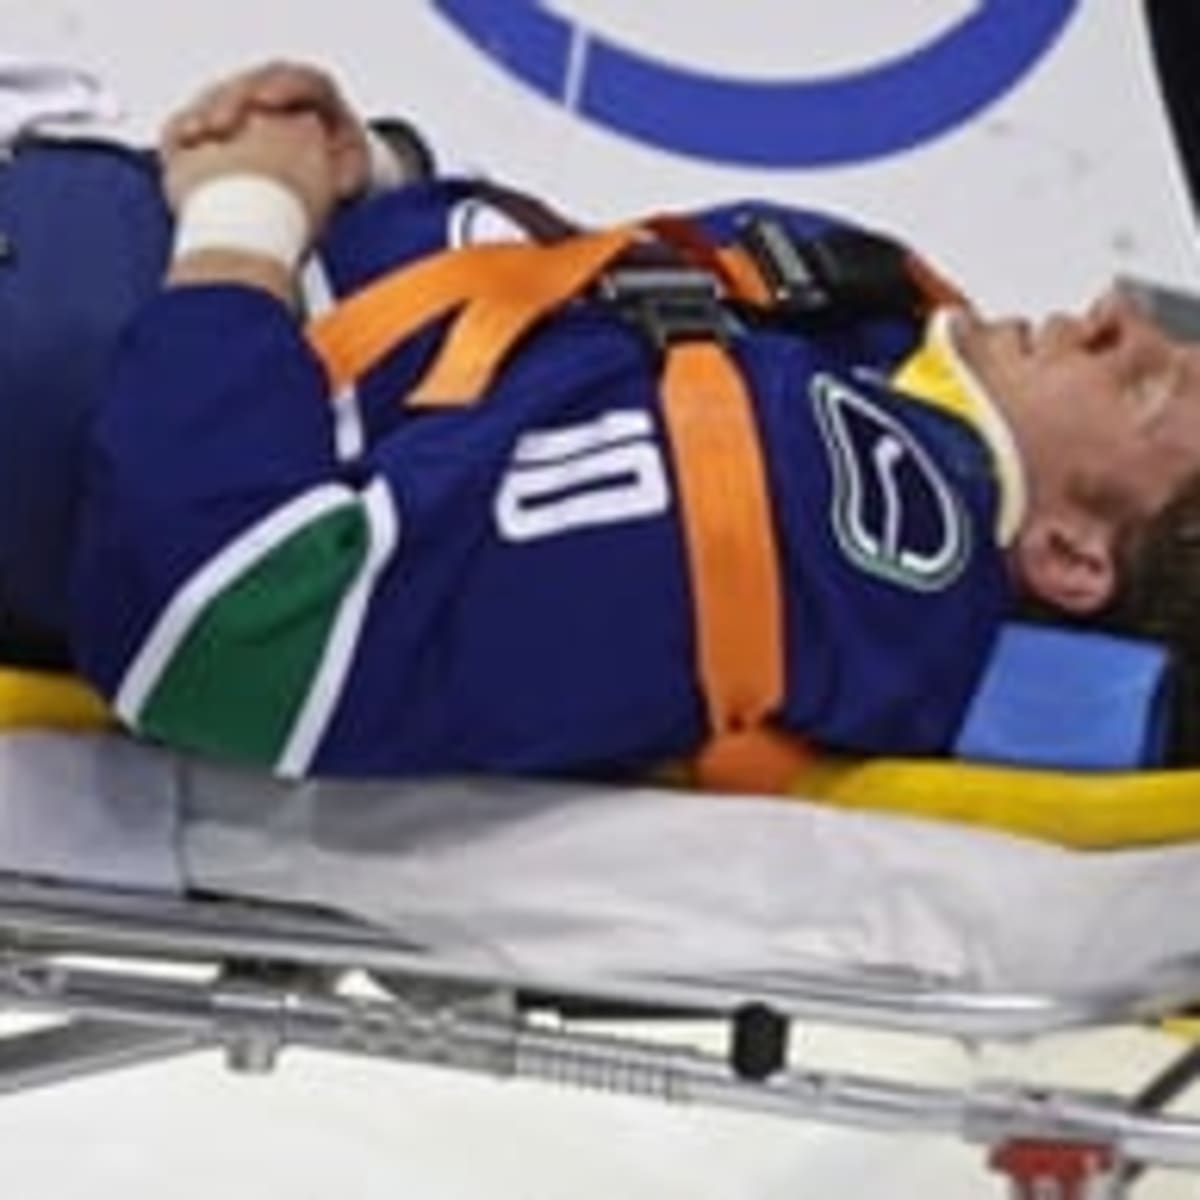 Sabres G Hackett taken off ice on stretcher